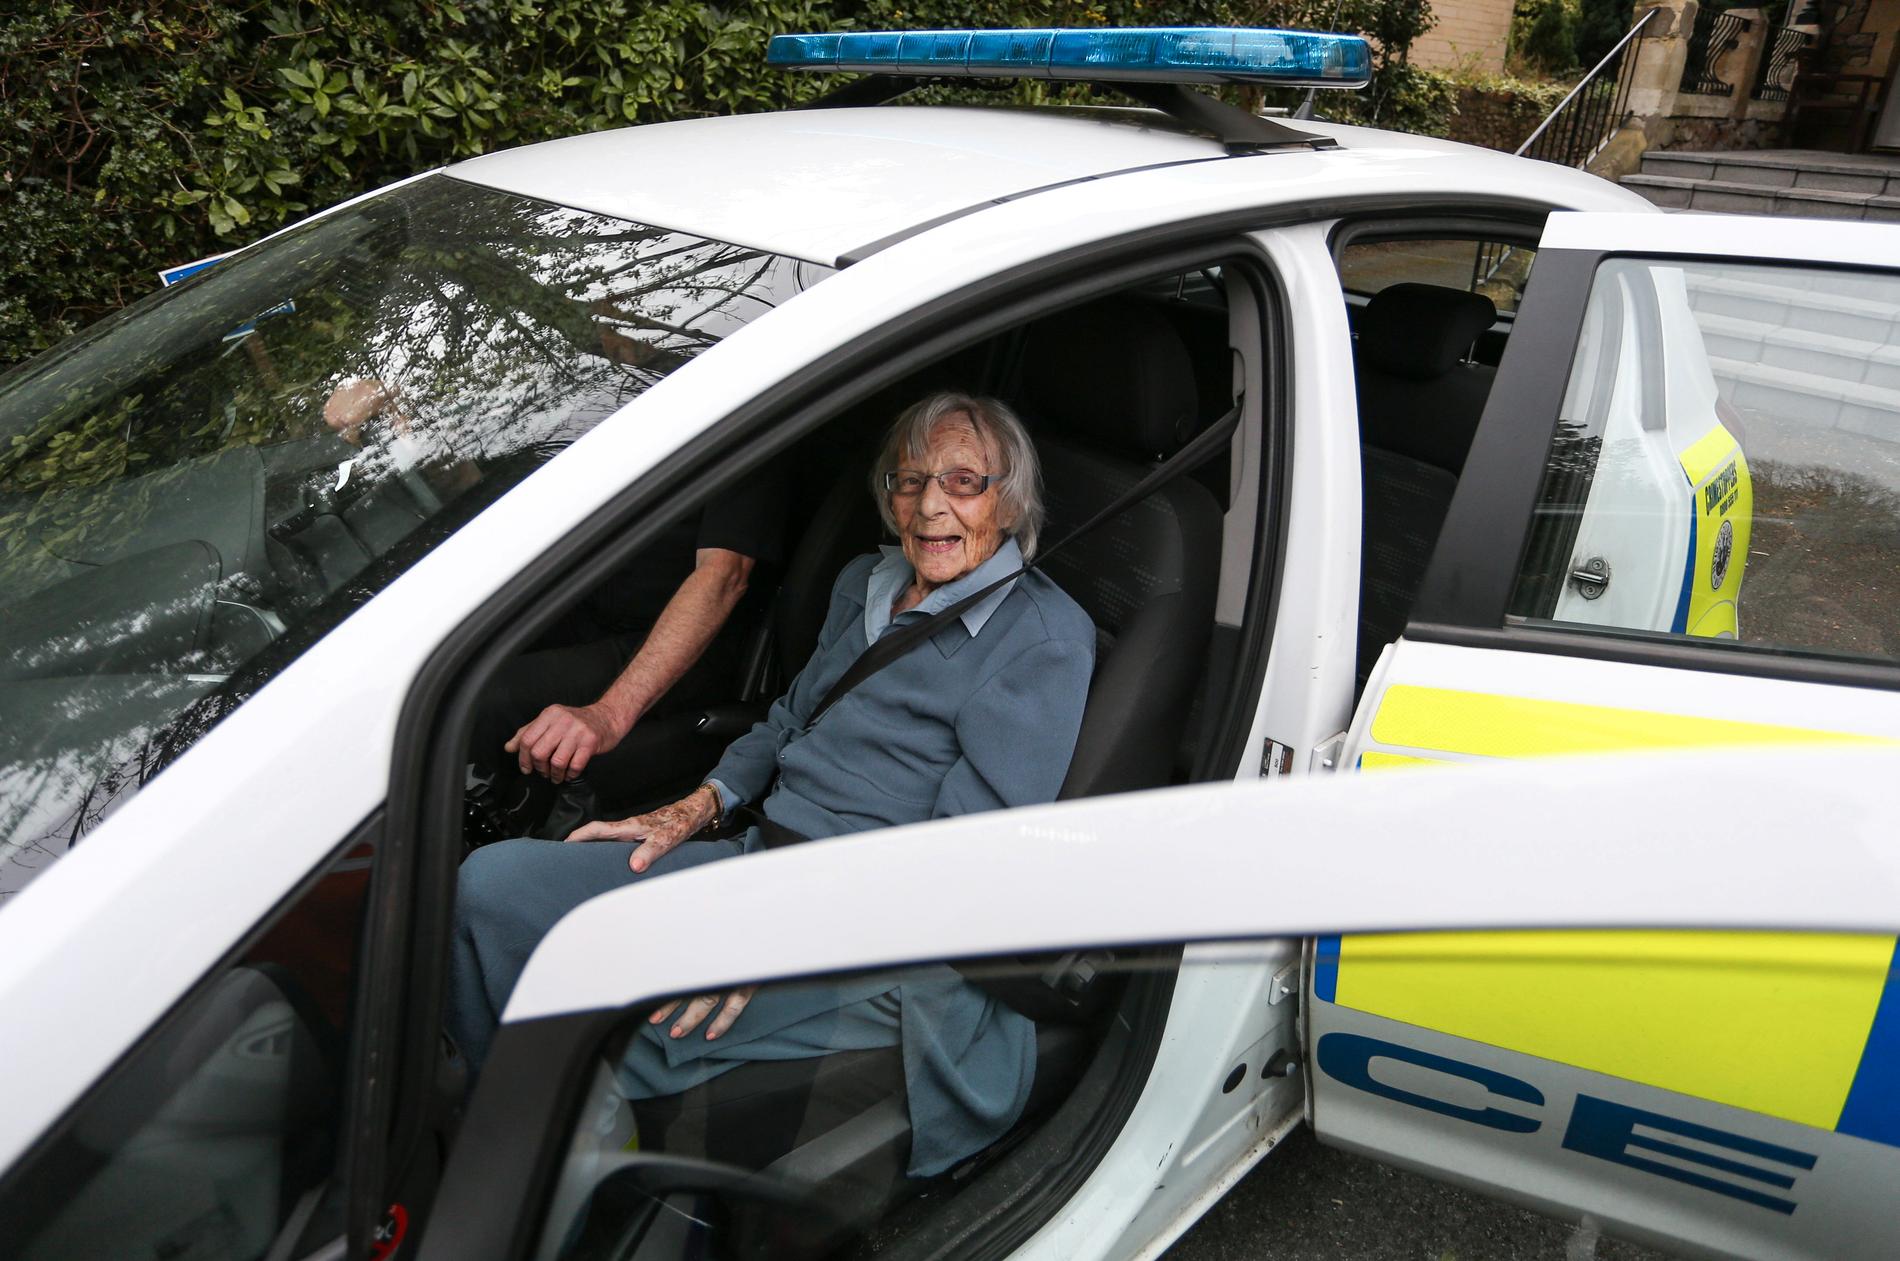 Anne Brokenbrow, 104, drömde om något få önskar sig – att bli gripen av polisen. Då blev hon det.